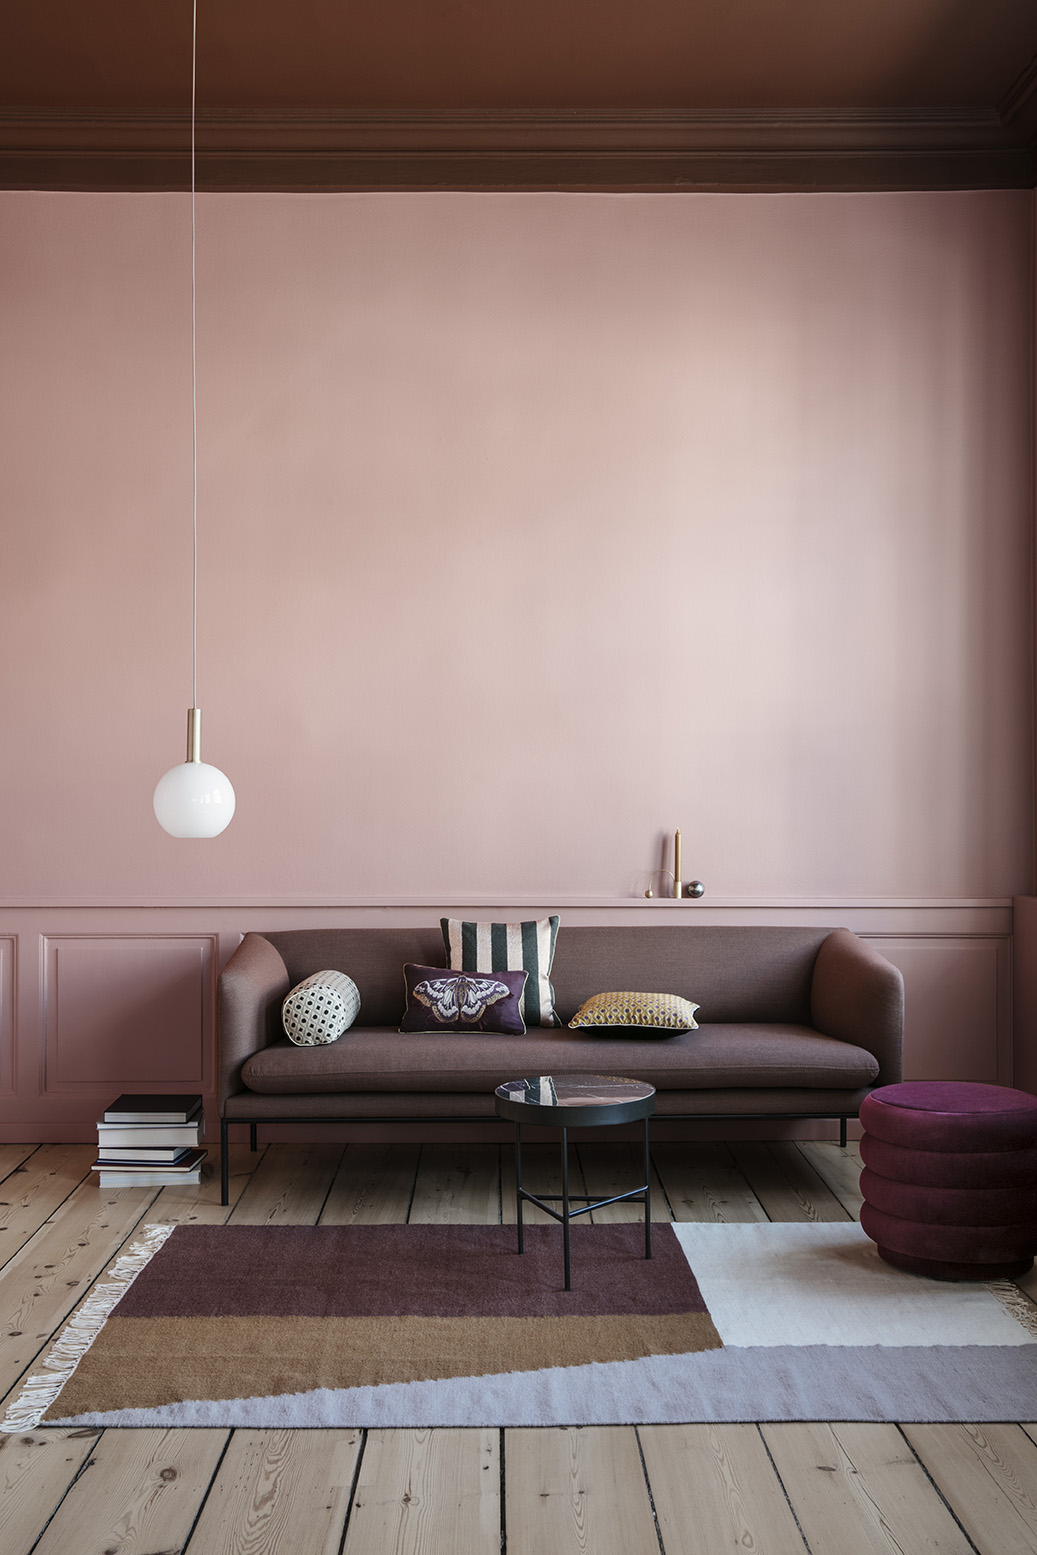 Støvet lyserød stue med høje paneler i samme farve. Mørk bordeaux sofa står op af væggen med mønstrede puder i.